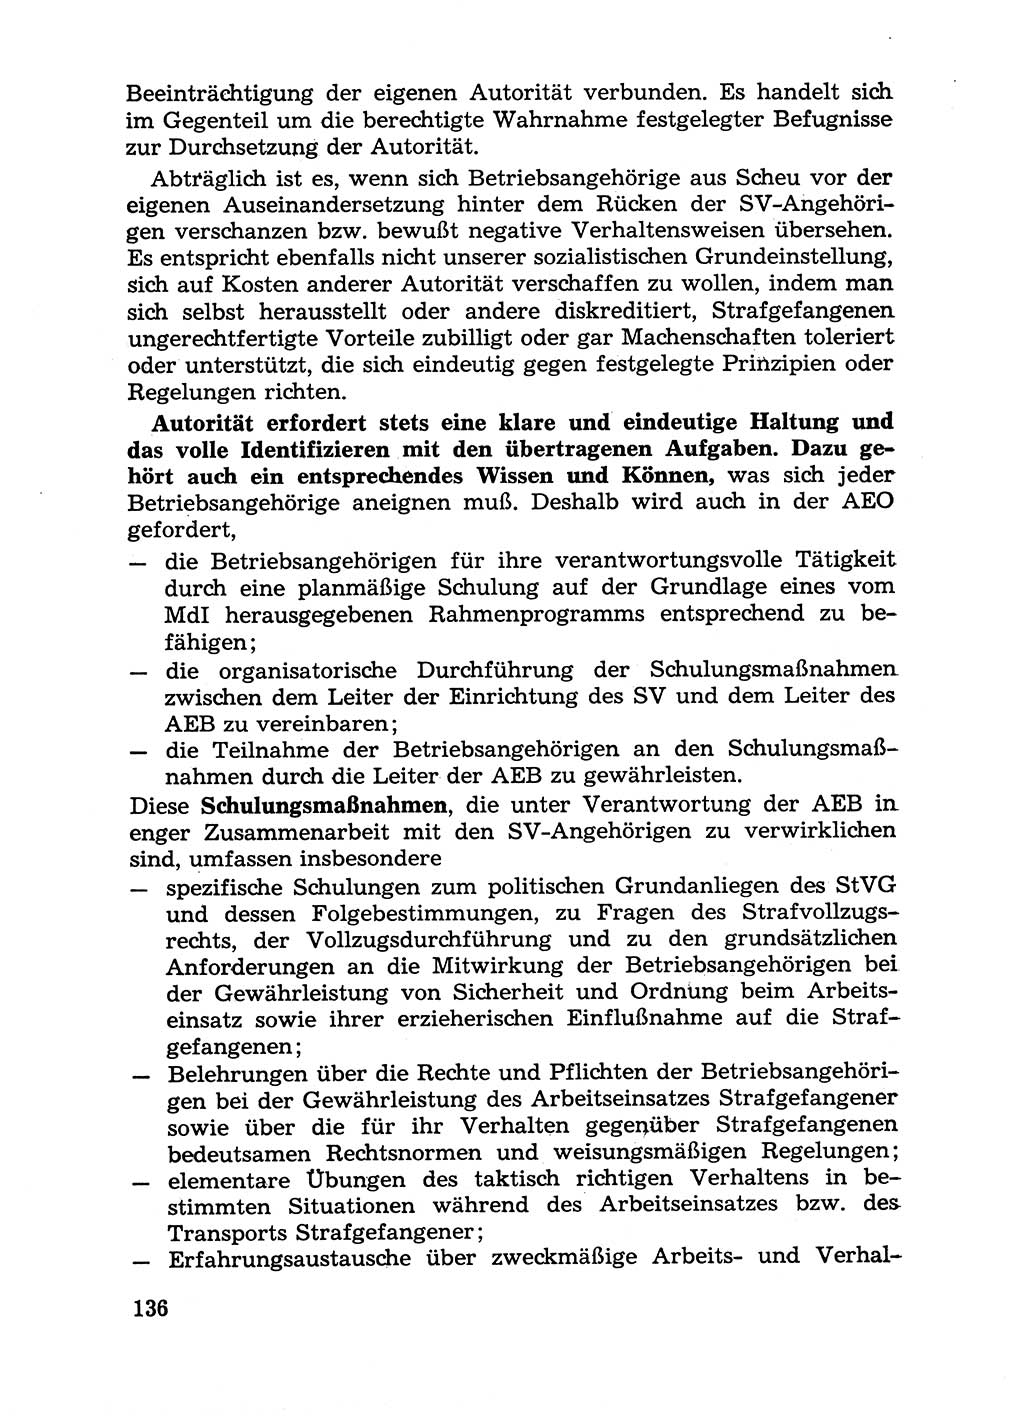 Handbuch für Betriebsangehörige, Abteilung Strafvollzug (SV) [Ministerium des Innern (MdI) Deutsche Demokratische Republik (DDR)] 1981, Seite 136 (Hb. BA Abt. SV MdI DDR 1981, S. 136)